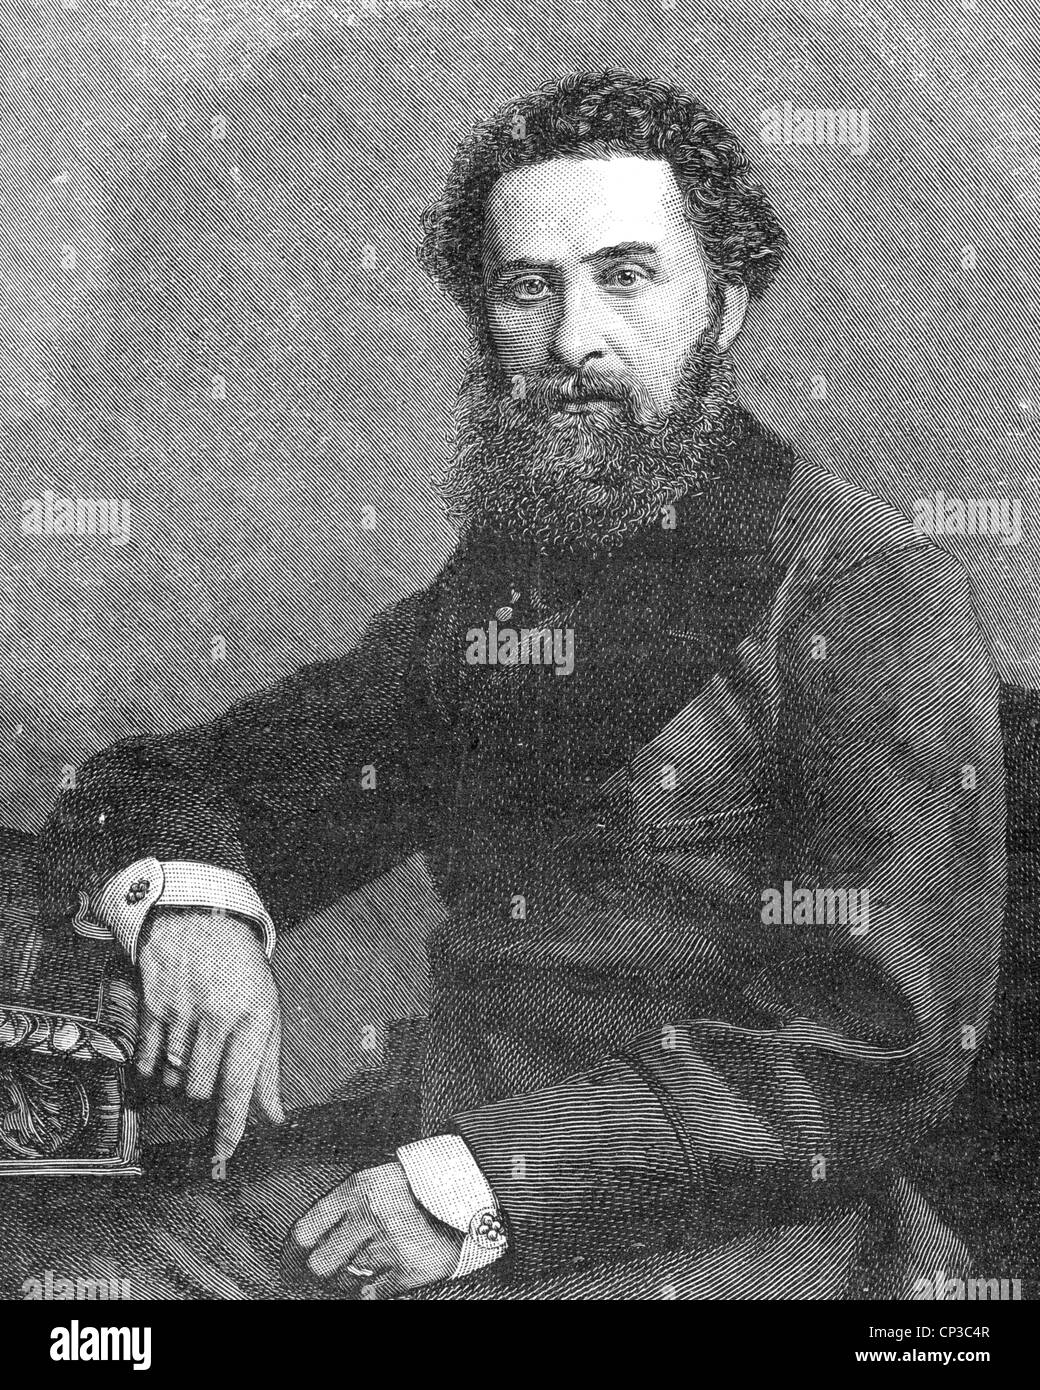 ROBERT BULWER-LYTON, 1er comte de Lytton (1831-1891) poète anglais, homme d'État et vice-roi de l'Inde 1876-80 Banque D'Images